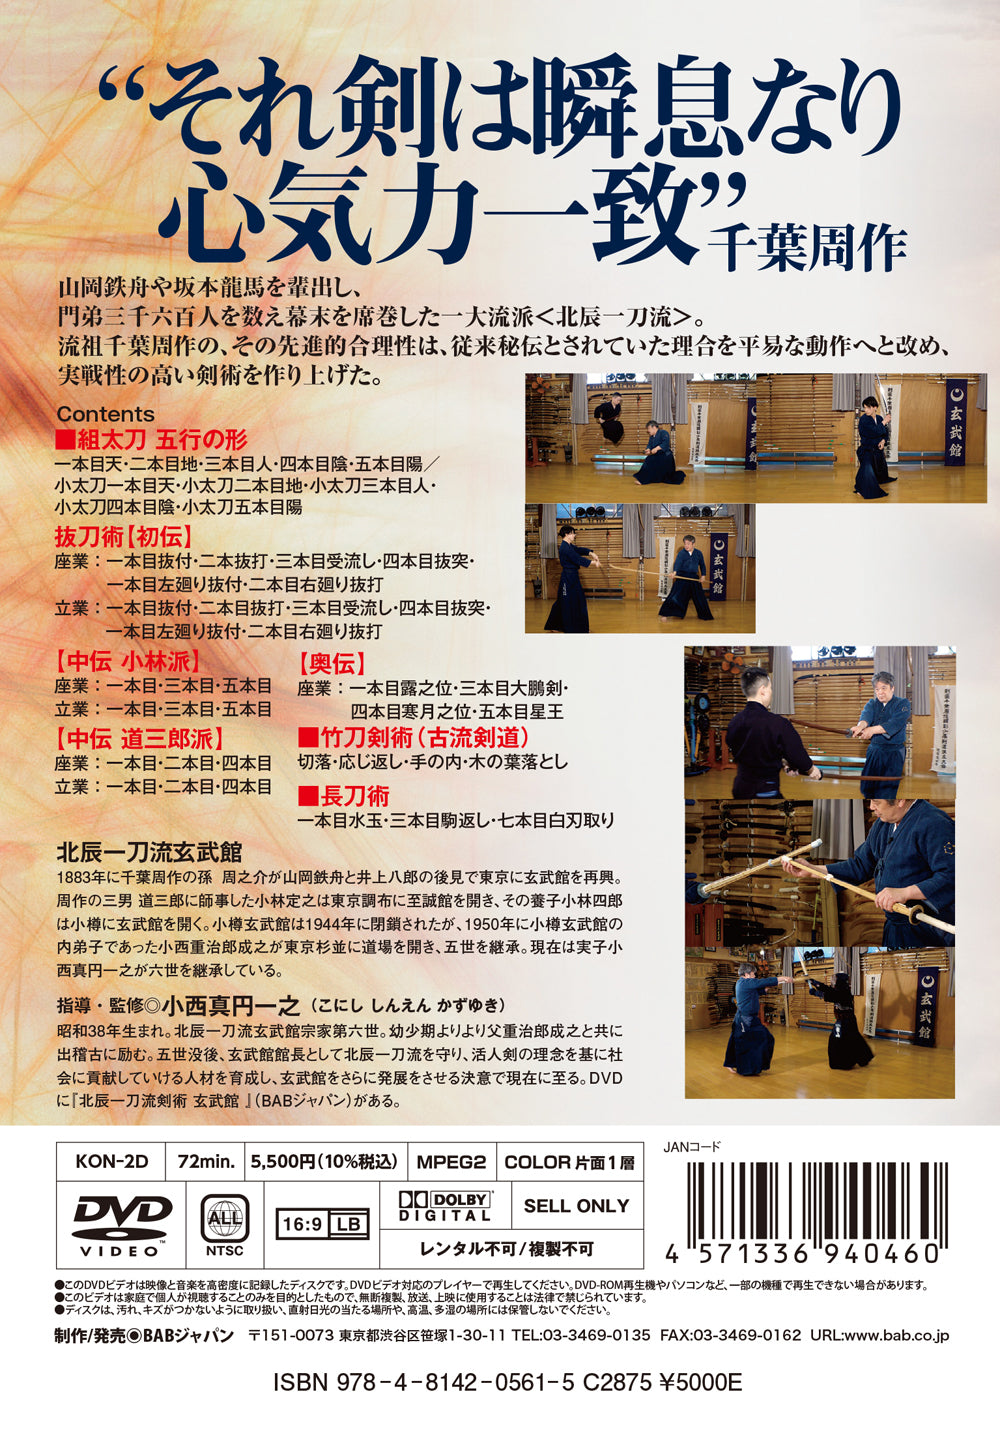 北辰一刀流剣術玄武館 Vol 2 DVD 小西茂次郎